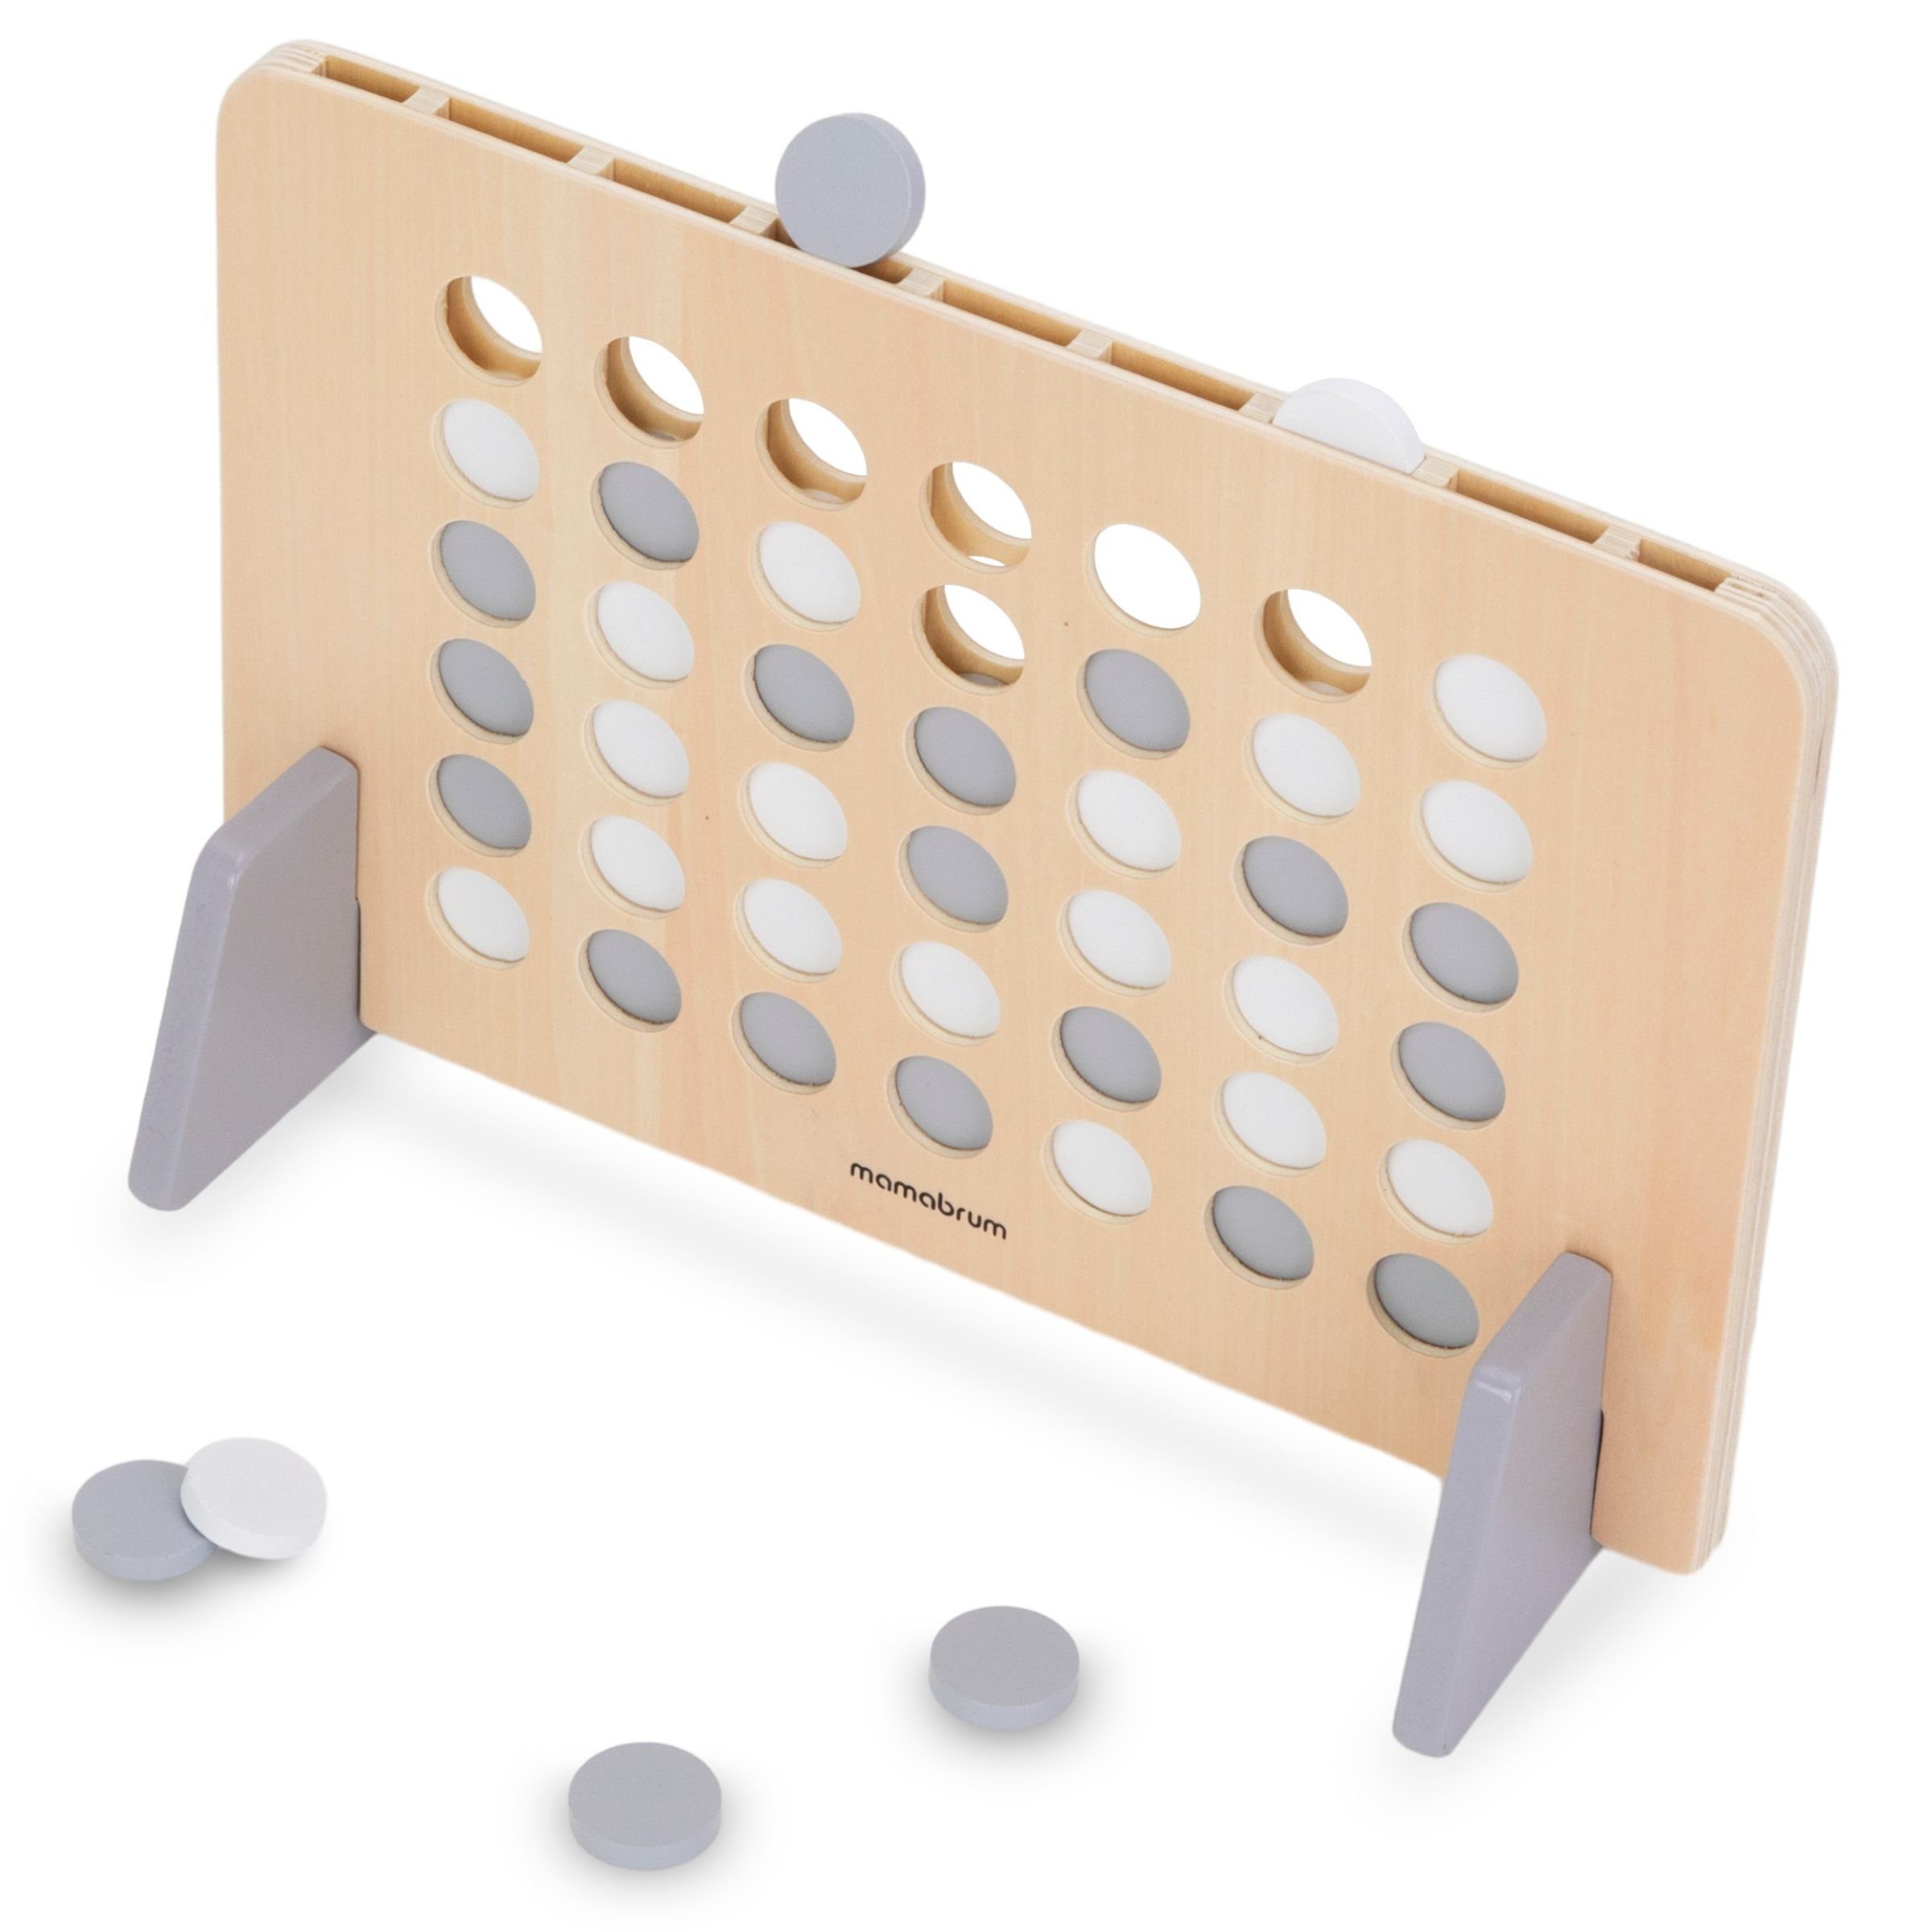 Mamabrum Puzzle-Sortierschale Puzzlespiel 4 Reihe in einer